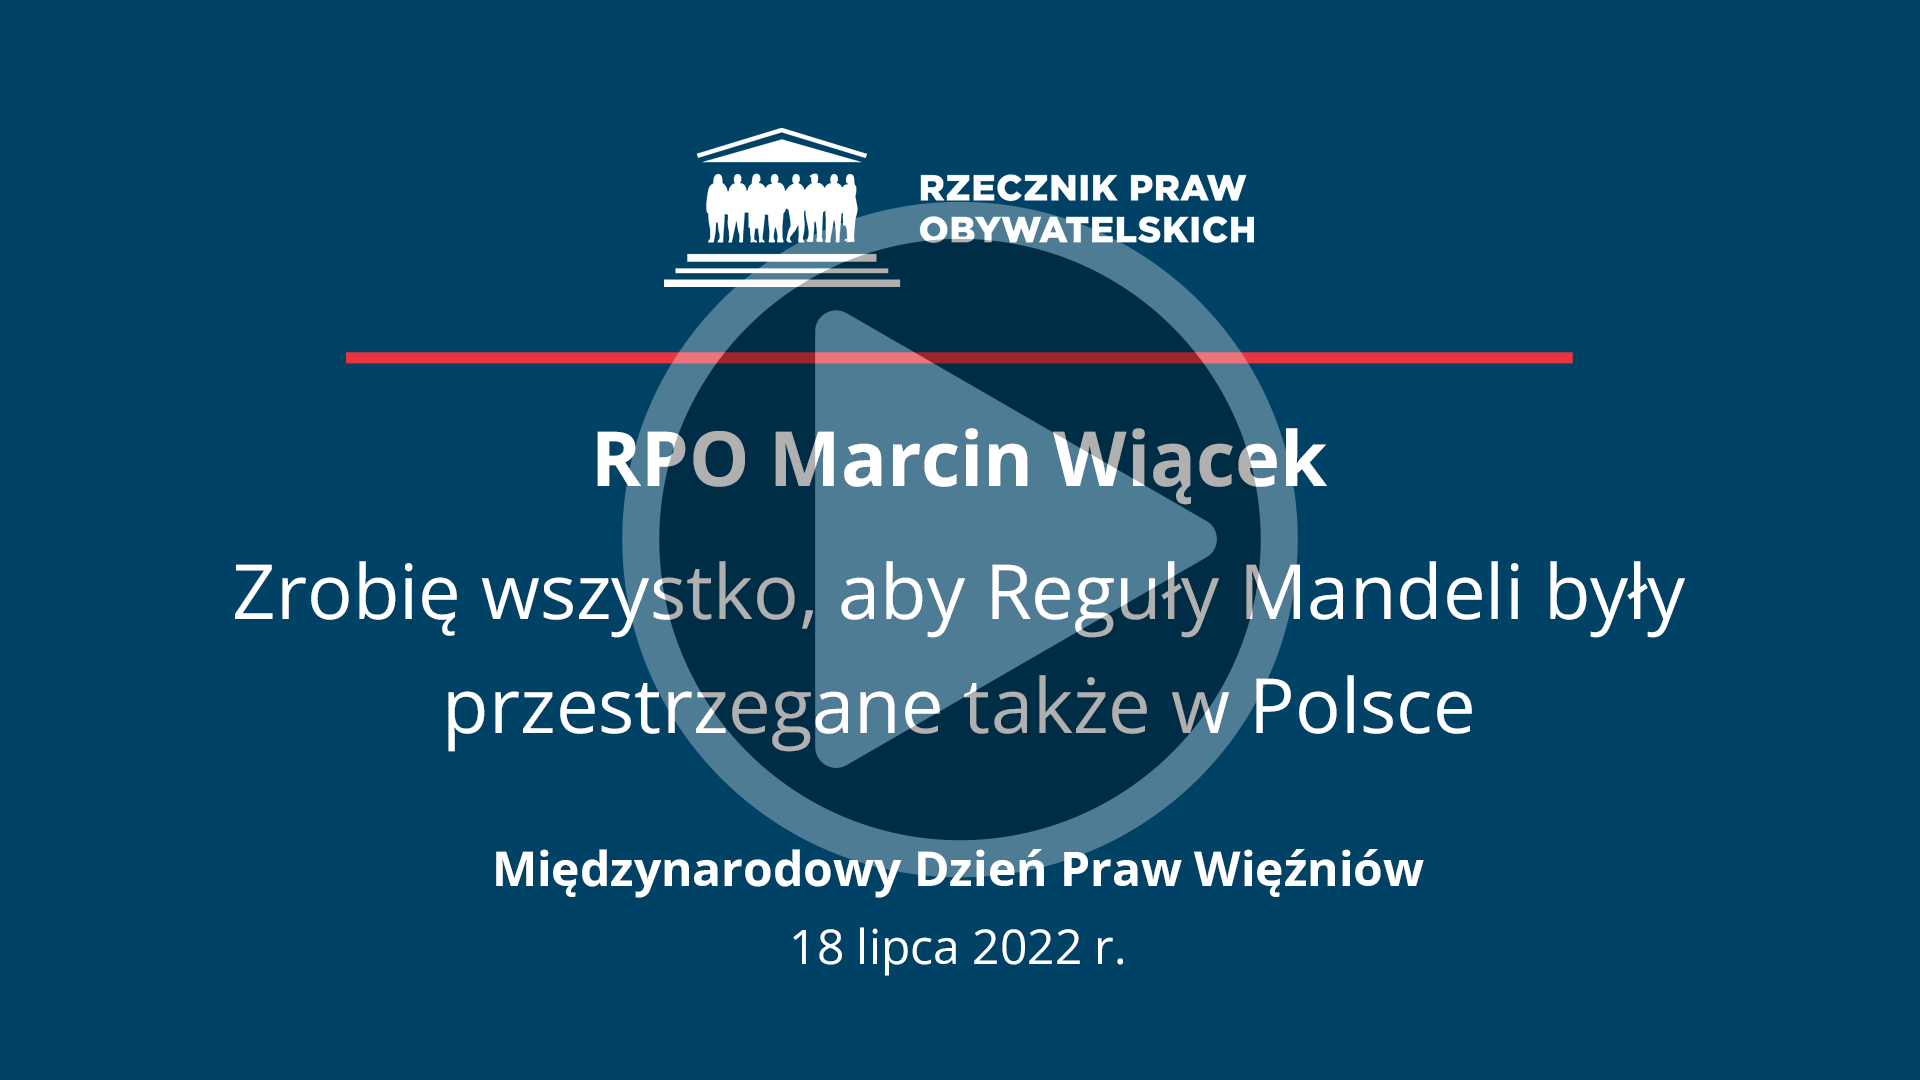 Plansza z napisem - RPO Marcin Wiącek - zrobię wszystko, by reguły Mandeli były przestrzegane także w Polsce - Międzynarodowy Dzień Praw Więźnia - 18 lipca 2022 r.